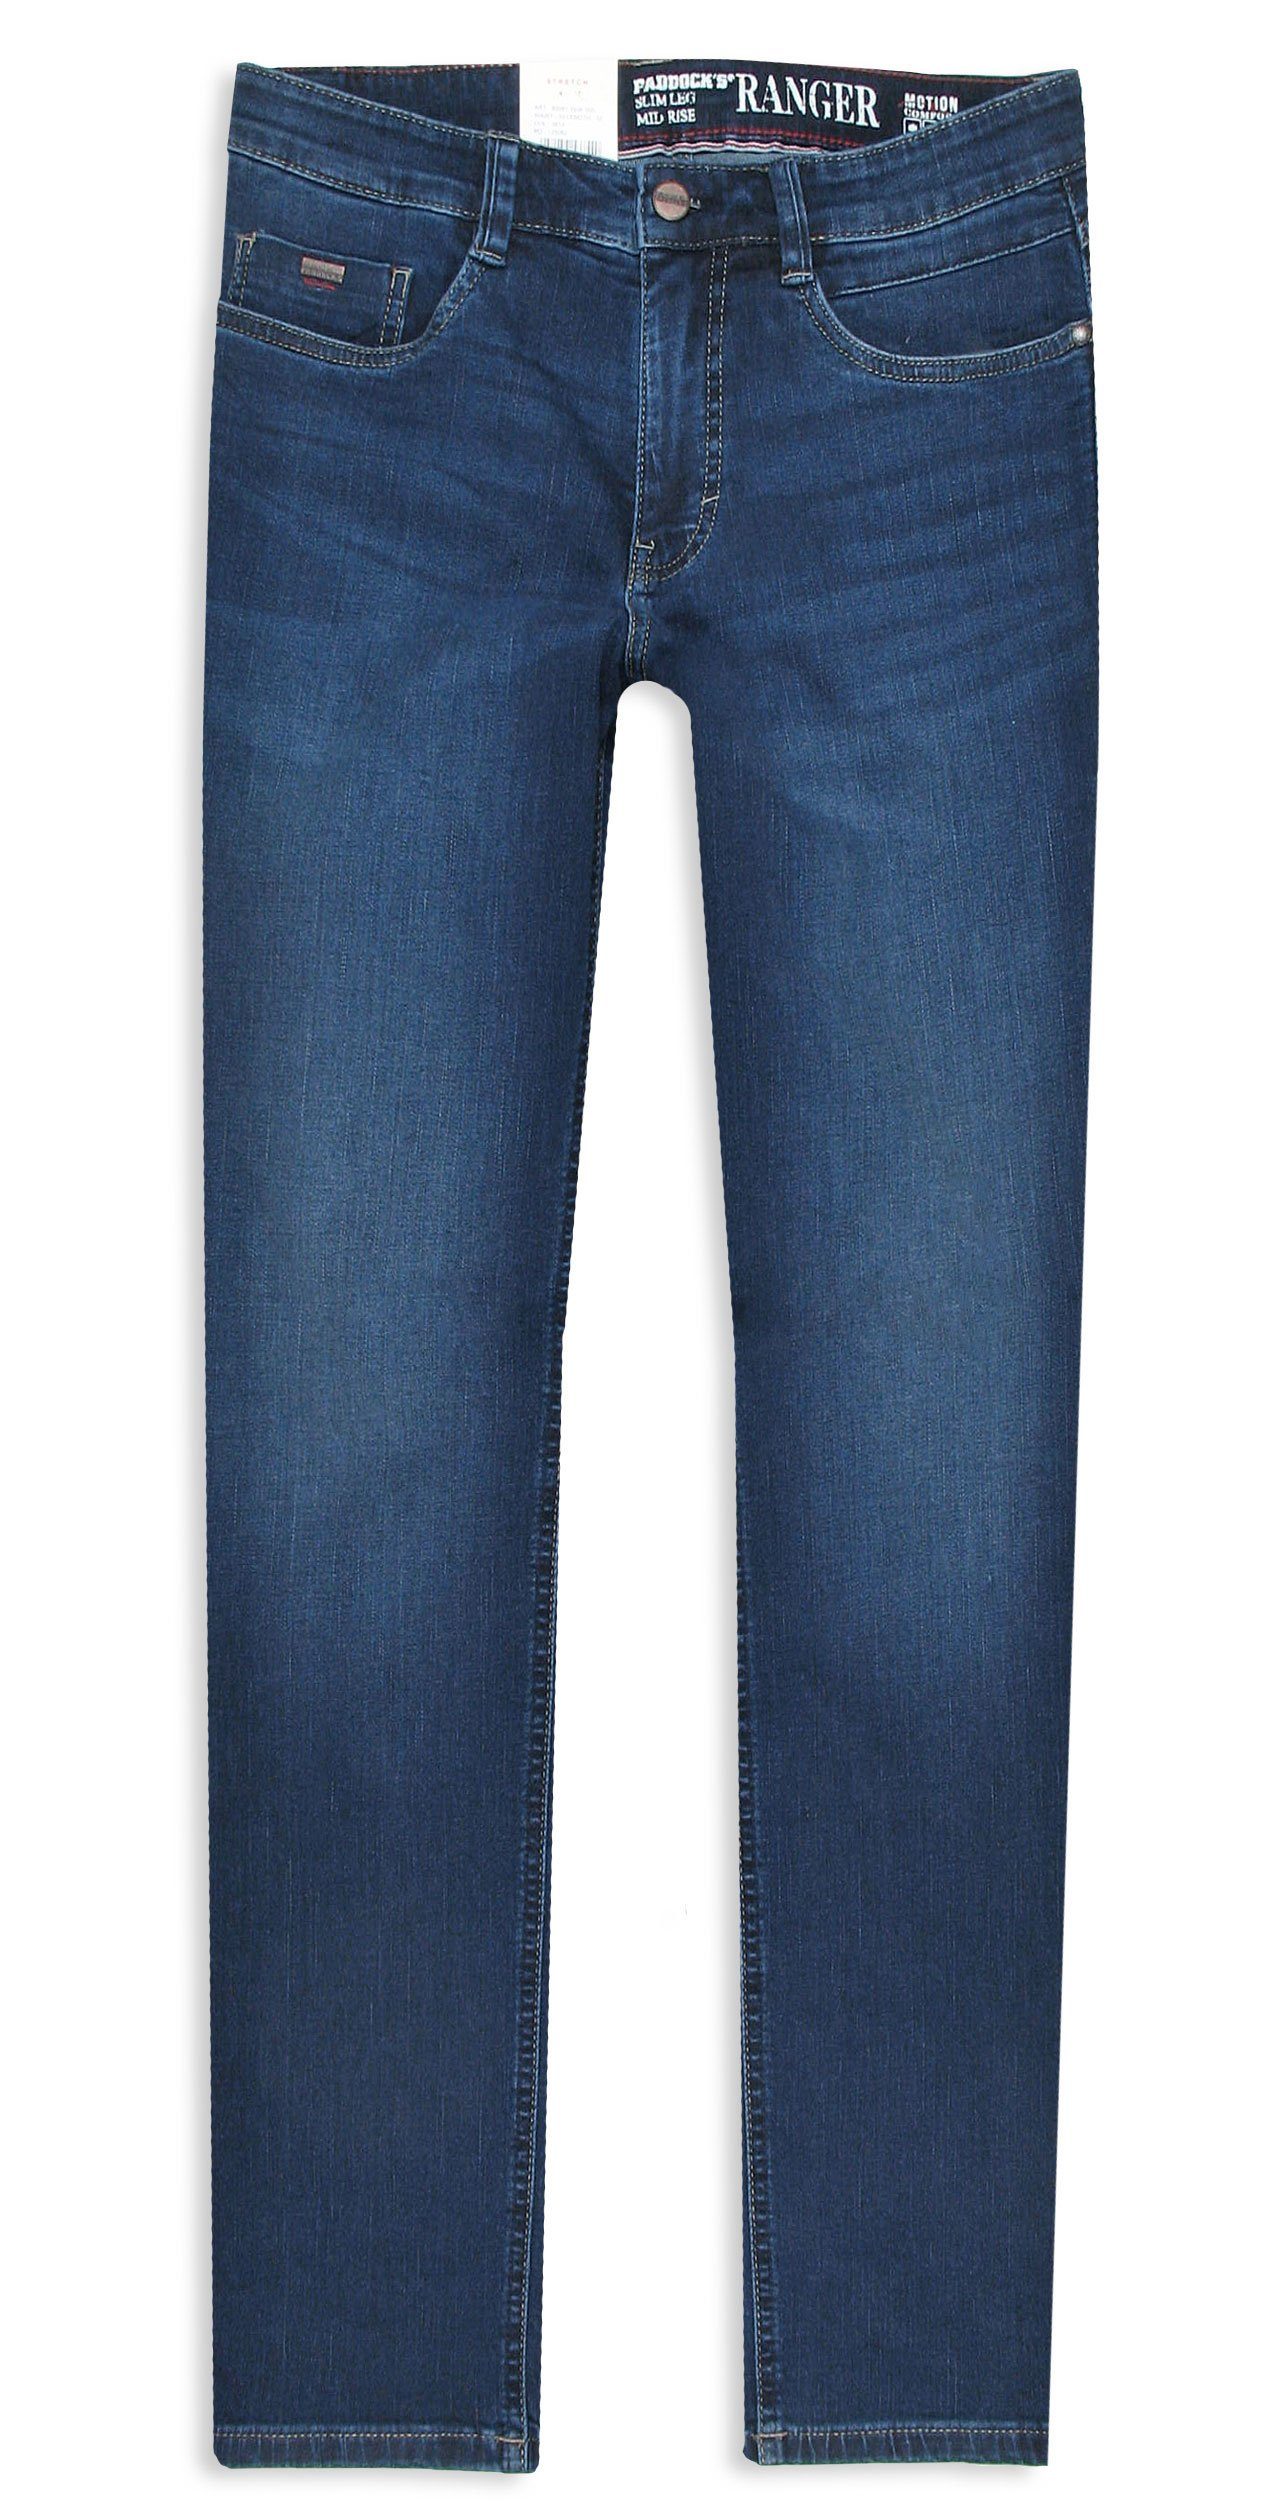 Paddock's 5-Pocket-Jeans Ranger Motion & Comfort Stretch Denim blue dark used